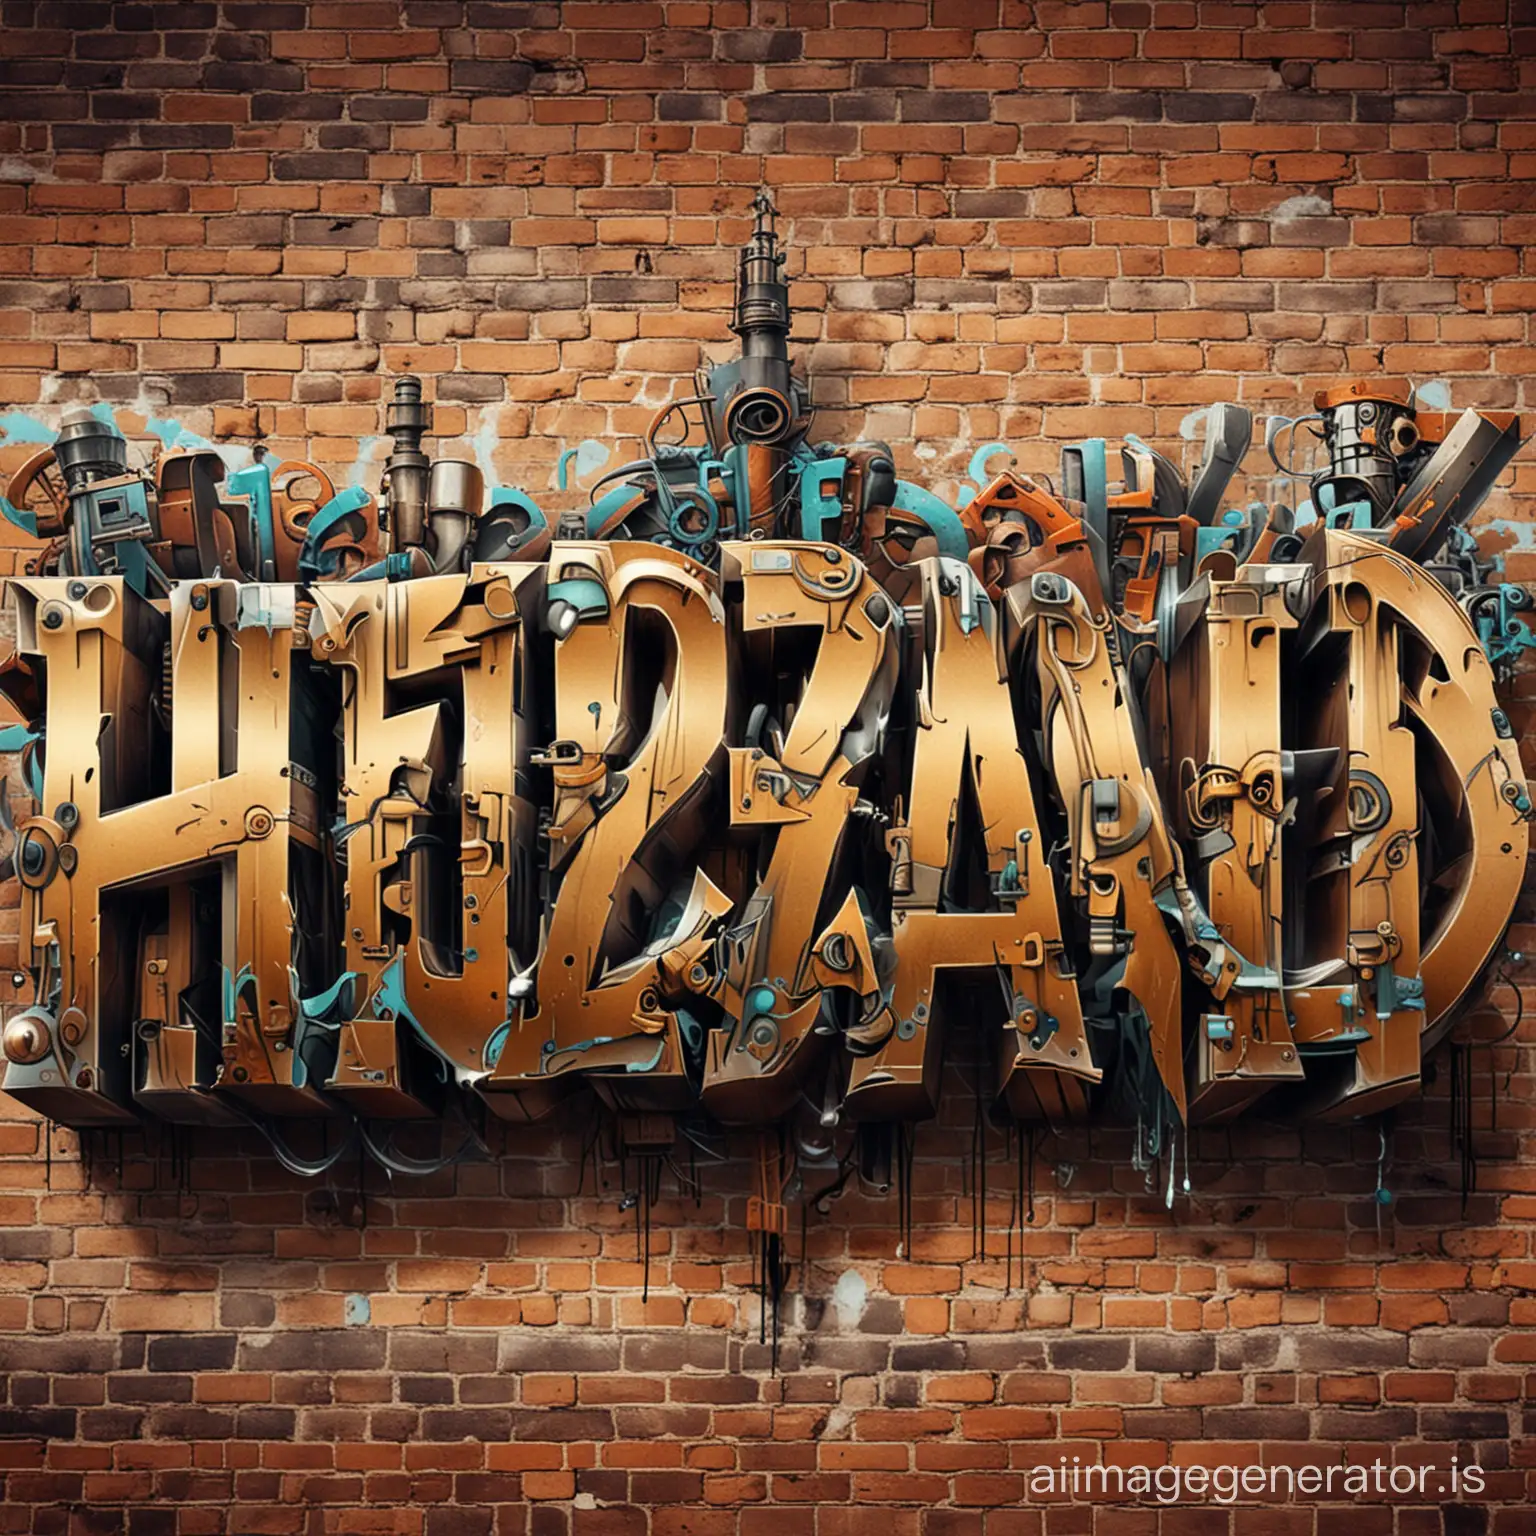 Steampunk-Graffiti-Style-HuzzBand-Name-Art